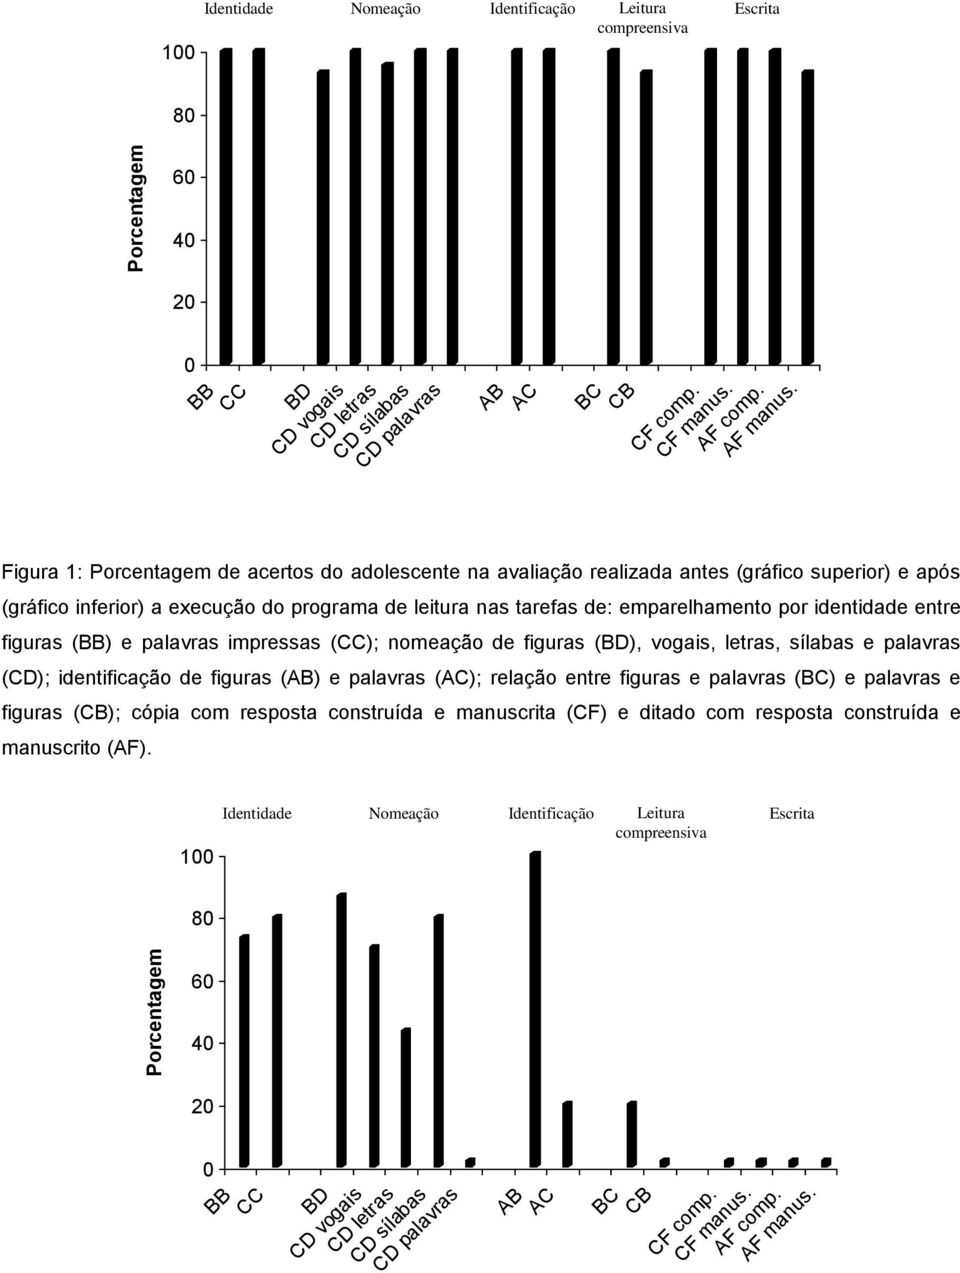 Figura 1: Porcentagem de acertos do adolescente na avaliação realizada antes (gráfico superior) e após (gráfico inferior) a execução do programa de leitura nas tarefas de: emparelhamento por